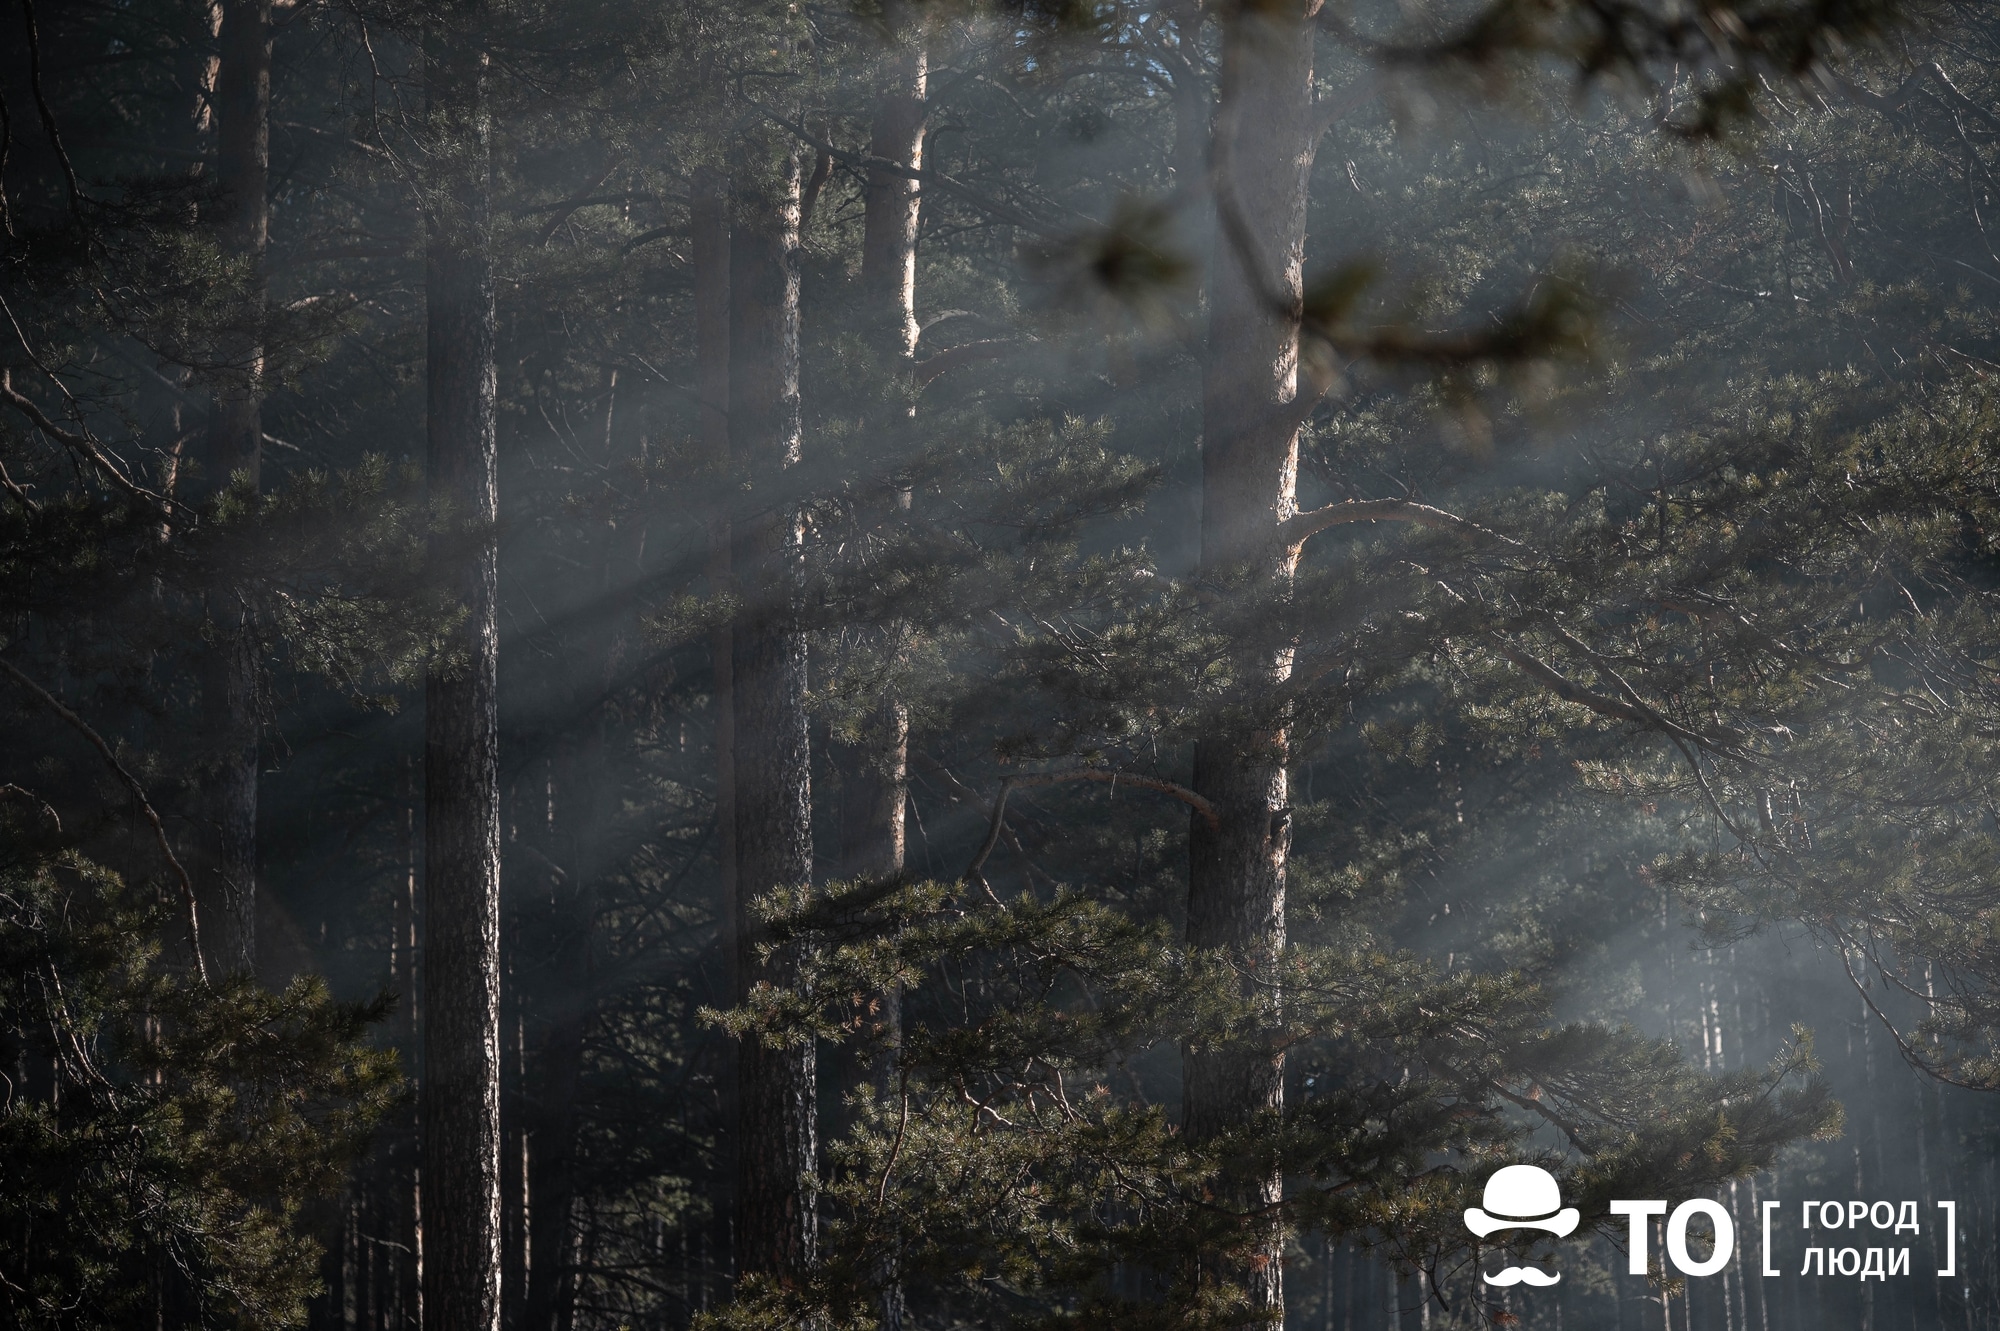 Лесные пожары, Томские новости, происшествия лес горит лес сводка лесные пожары природные пожары В Томской области введен пожароопасный сезон